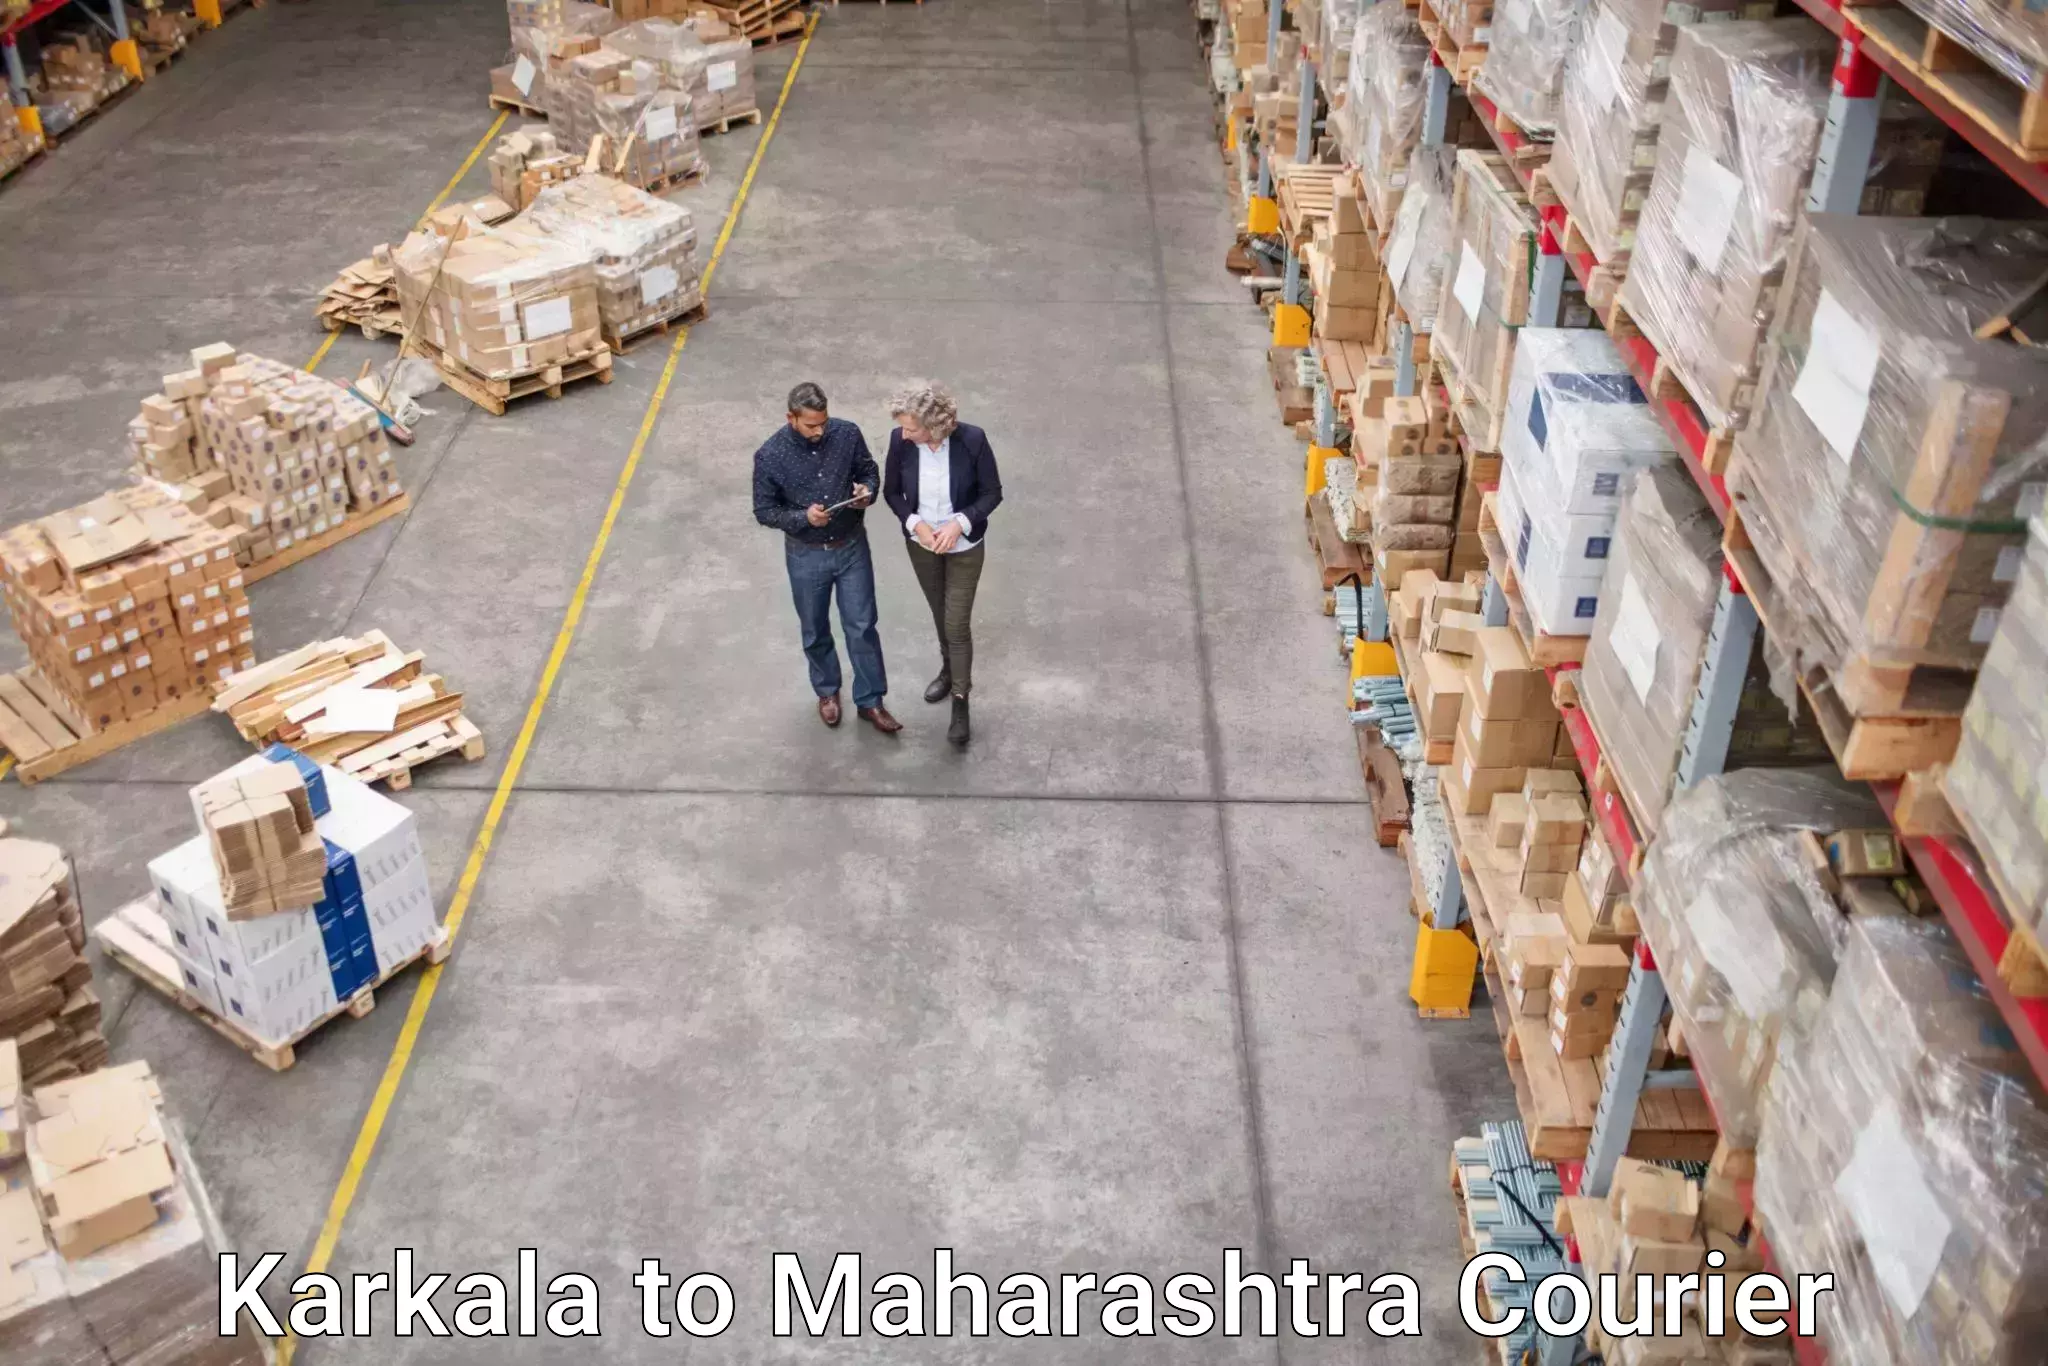 Tech-enabled shipping Karkala to Pandharkawada